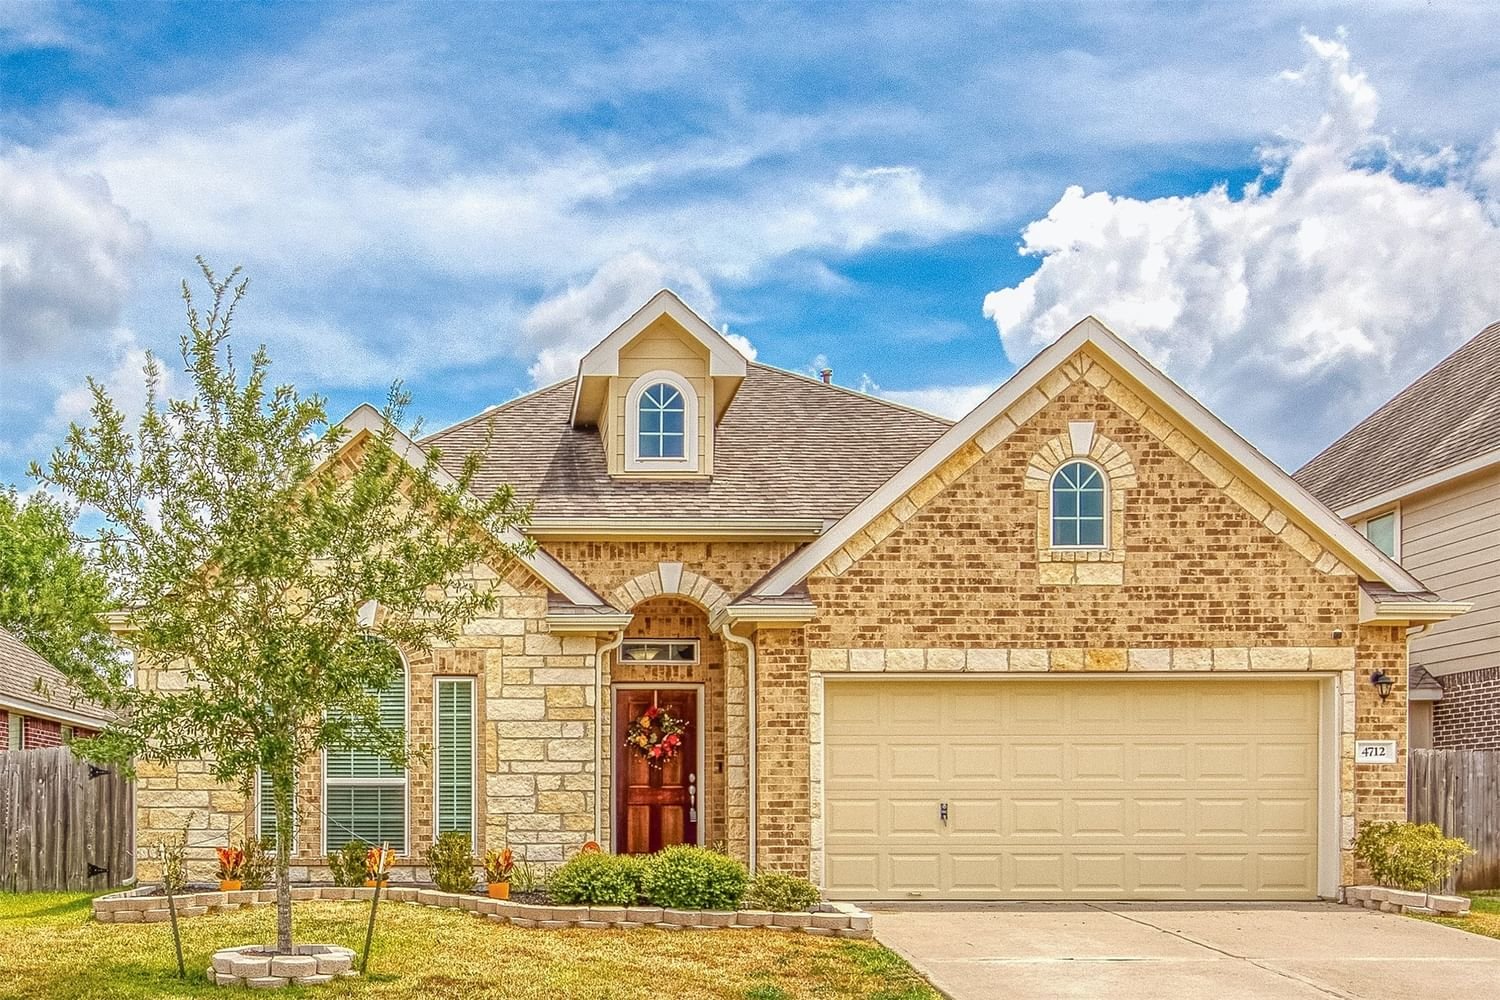 Real estate property located at 4712 Alluvial, Brazoria, Alvin, TX, US